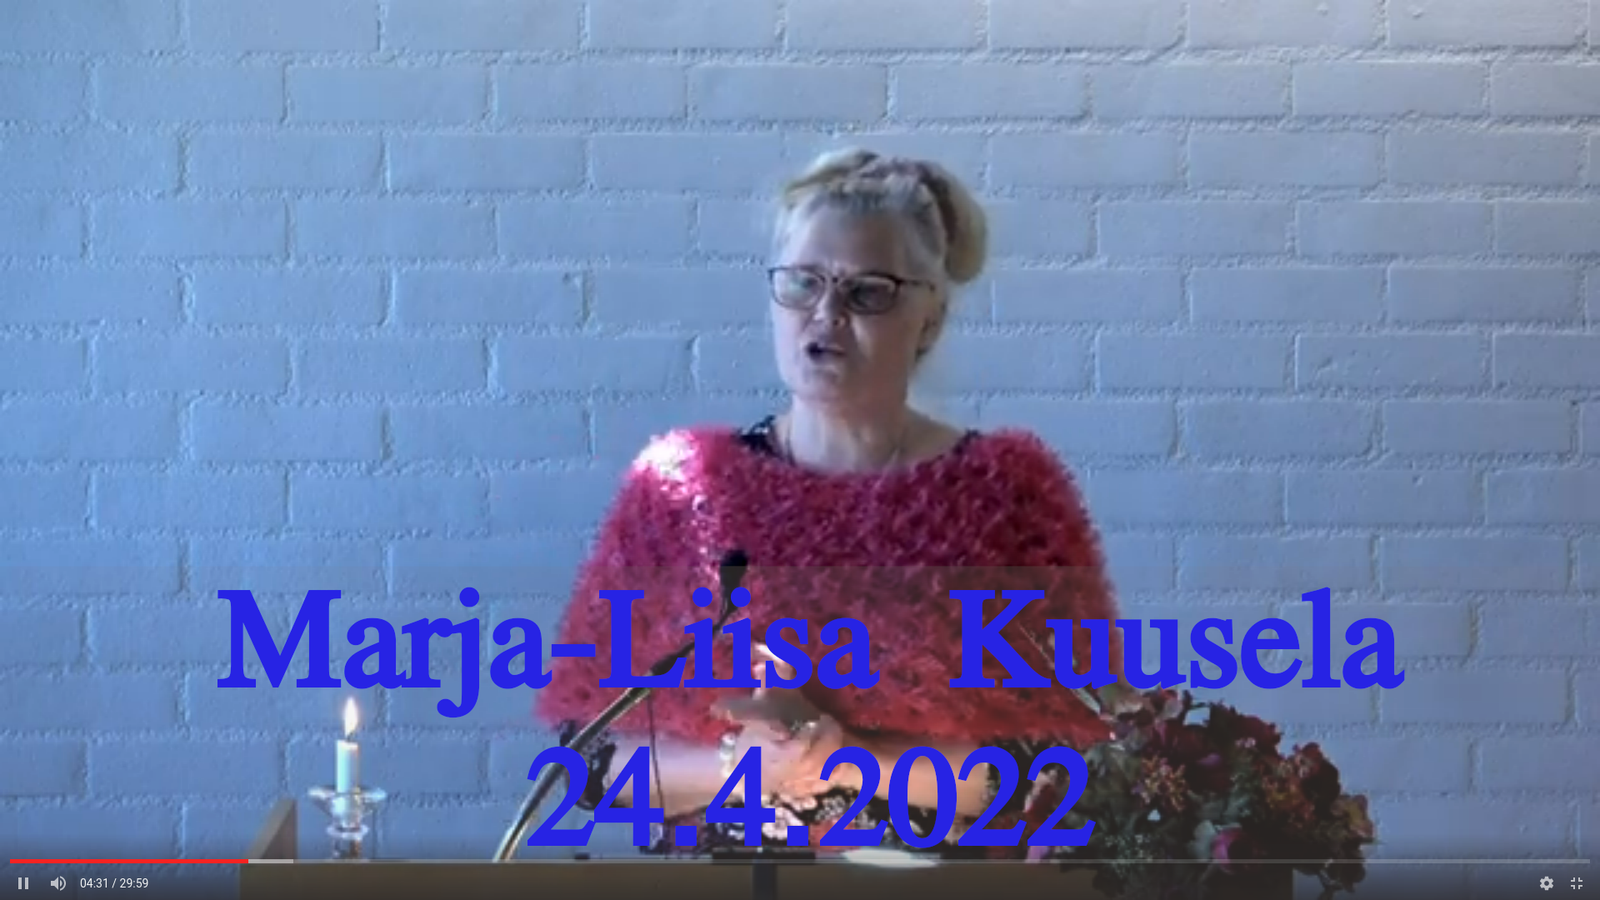 Marja-Liisa Kuusela 24.4.2022